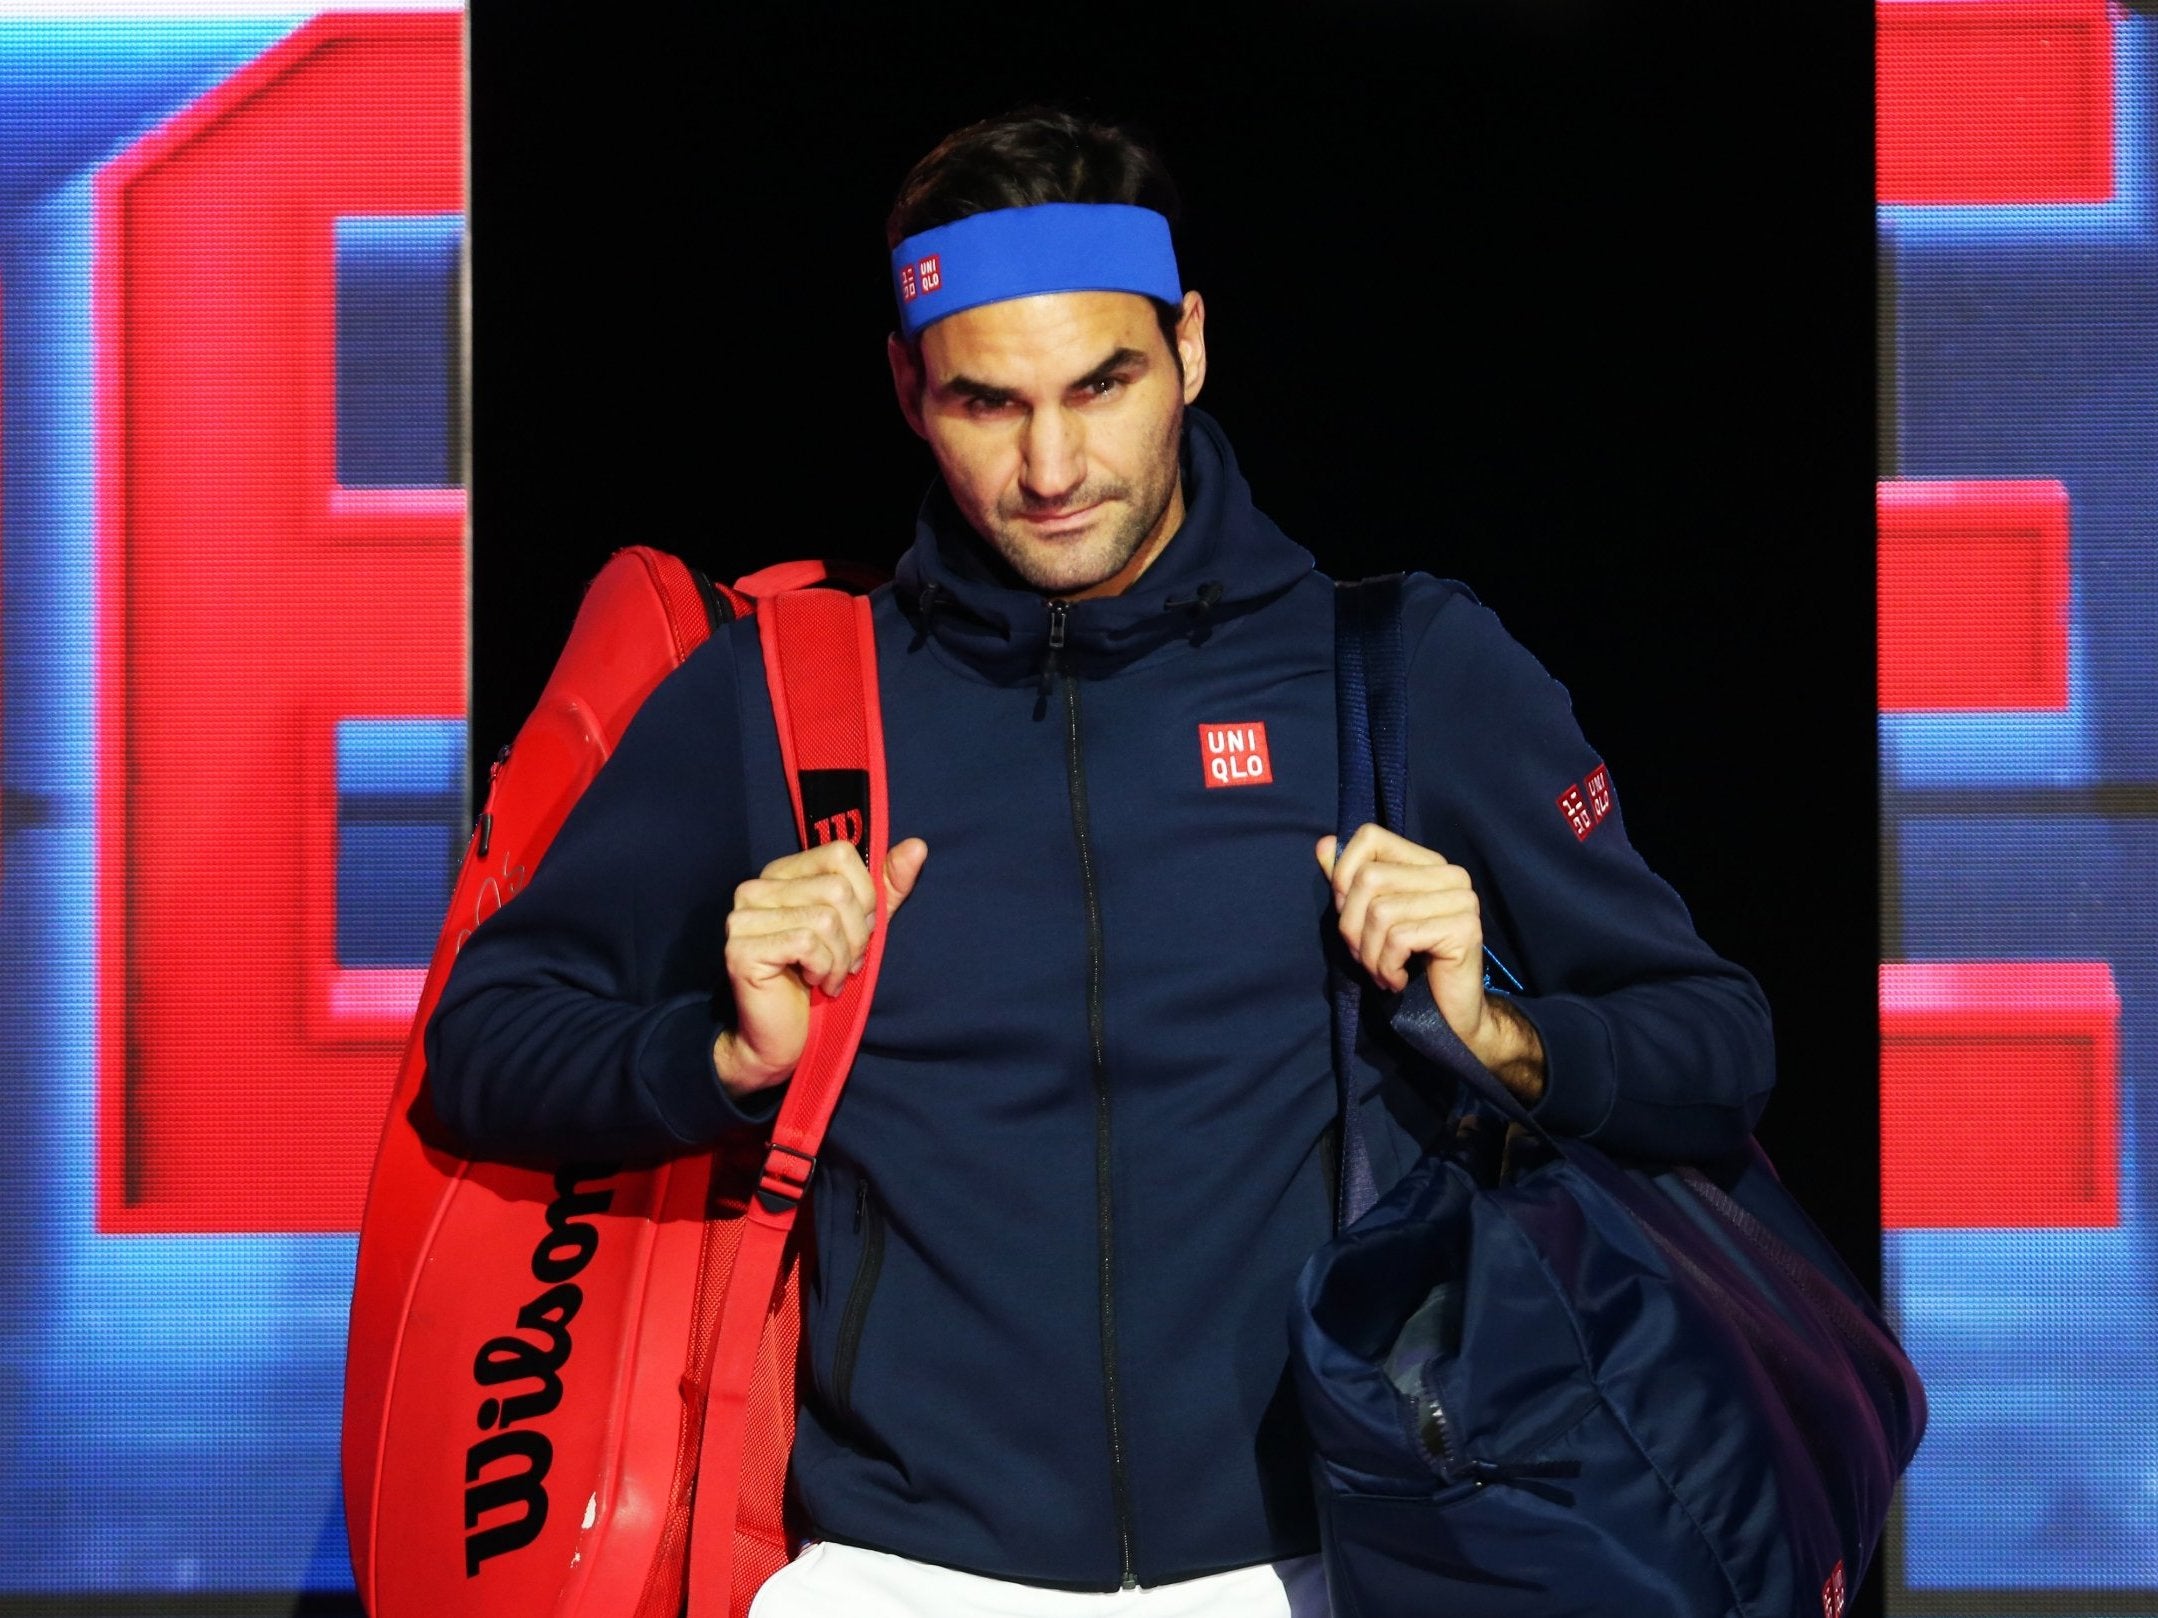 Roger Federer enters the O2 Arena